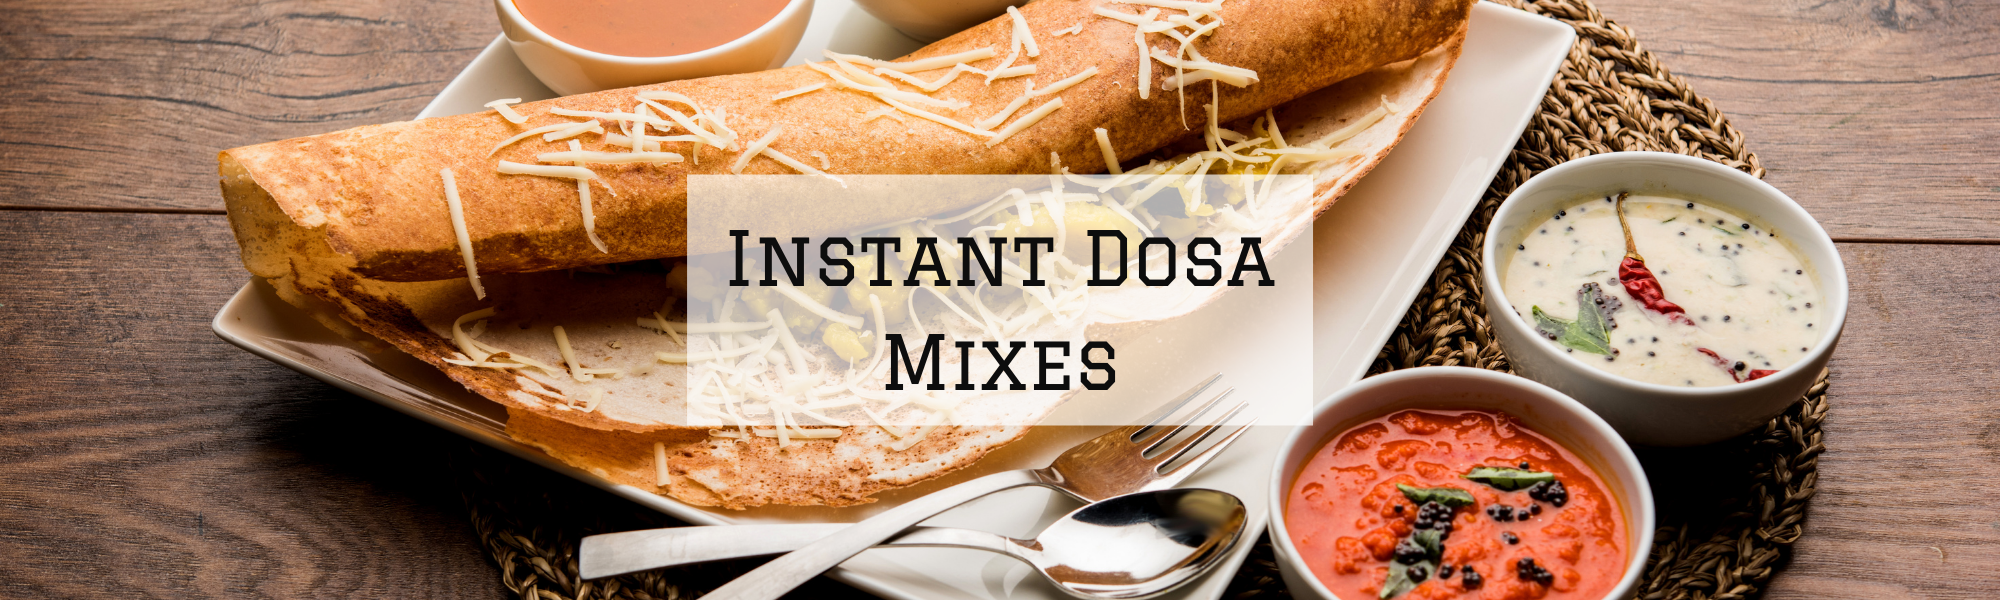 Instant Dosa Mixes